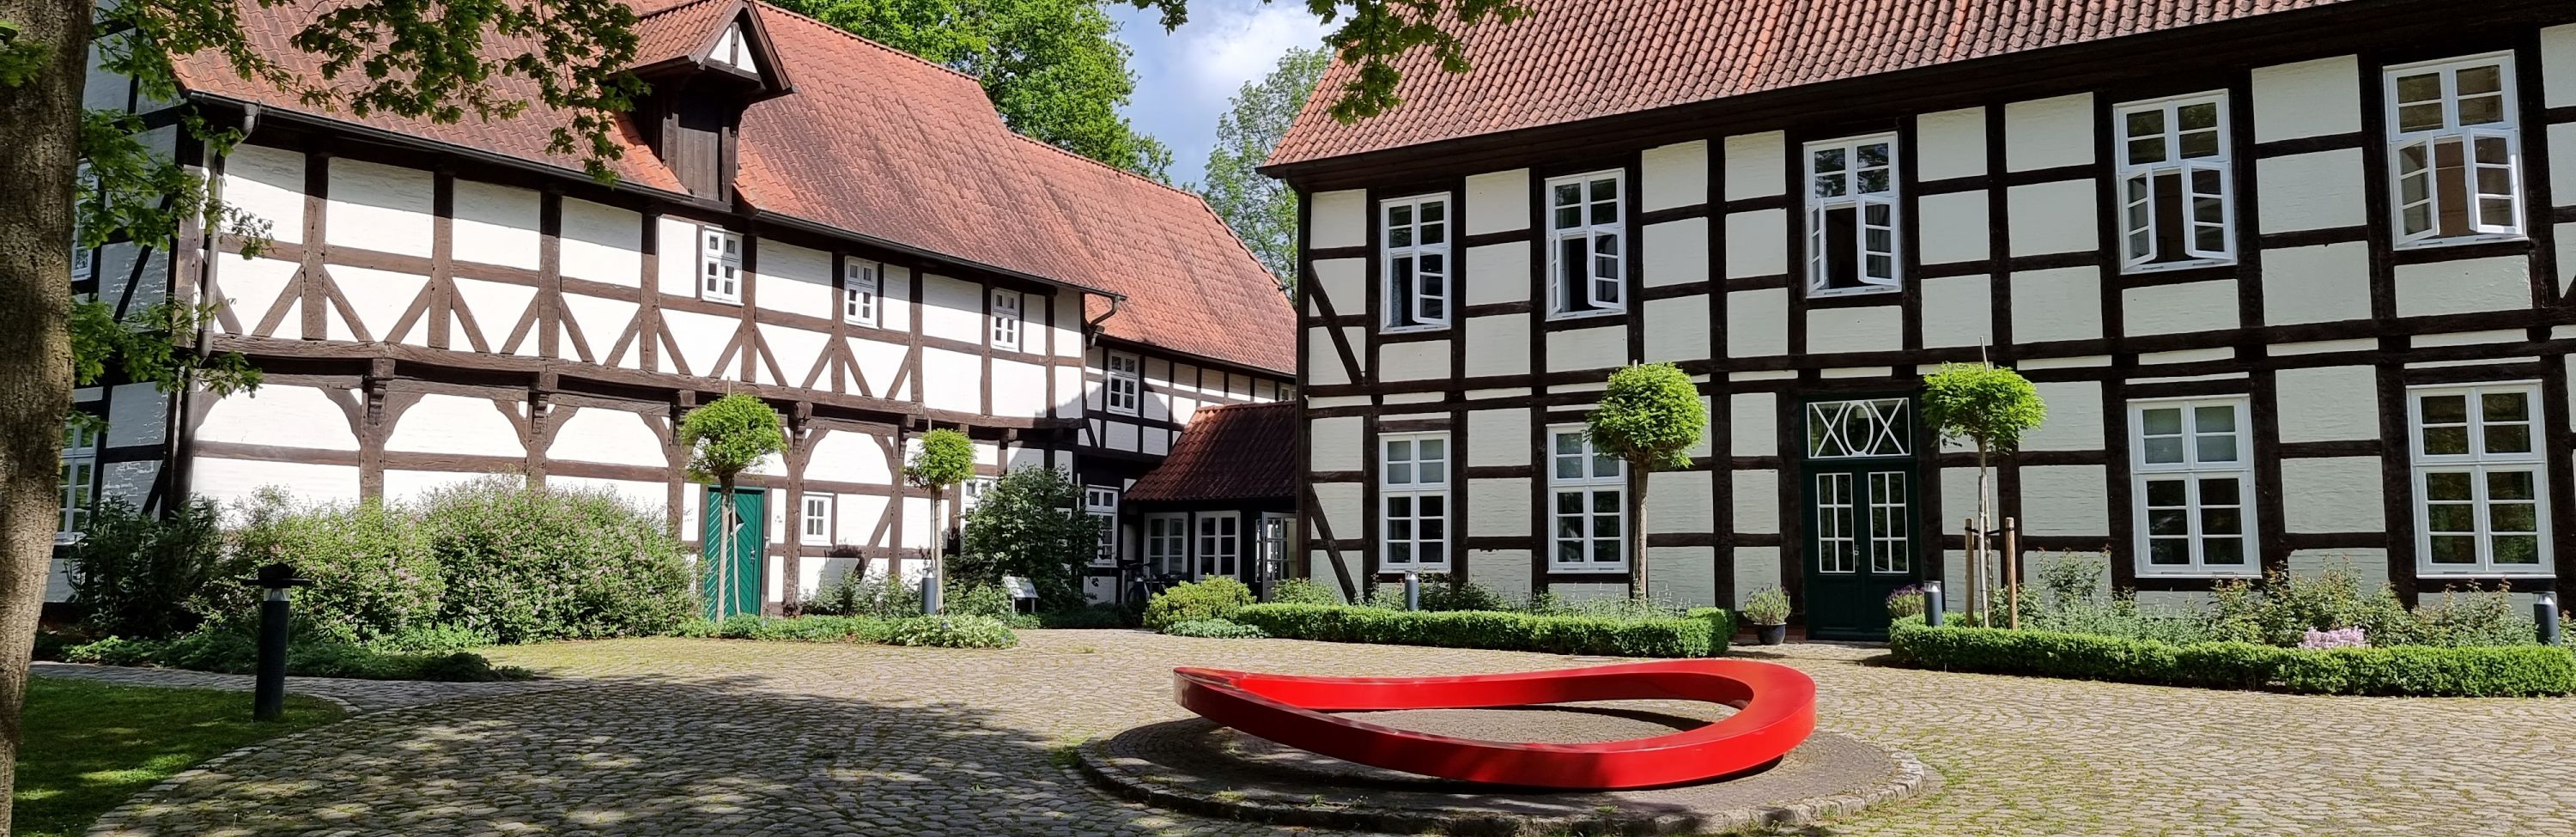 Die Freudenburg: Fachwerkhäuser um einen gepflsterten Hof gruppiert. In der Mitte eine Kunstskulptur: ein großer, roter Stahlring.